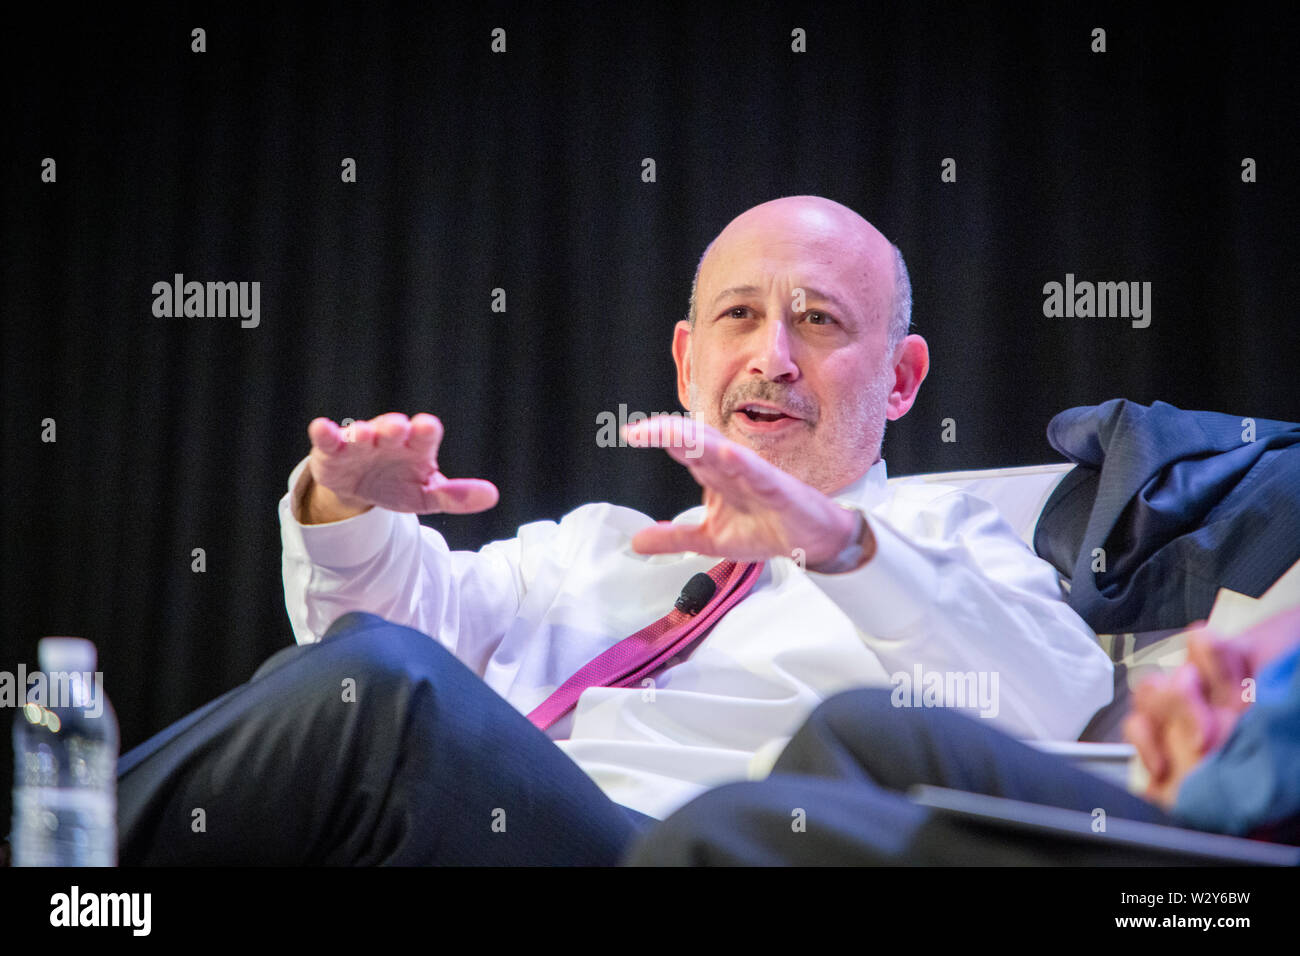 Président-directeur général de Goldman Sachs, Lloyd Blankfein, répond aux questions de l'animateur et de l'auditoire au cours d'un entretien à la réunion annuelle de 'sifma', l'industrie des valeurs mobilières et Marchés Financiers Association. Banque D'Images